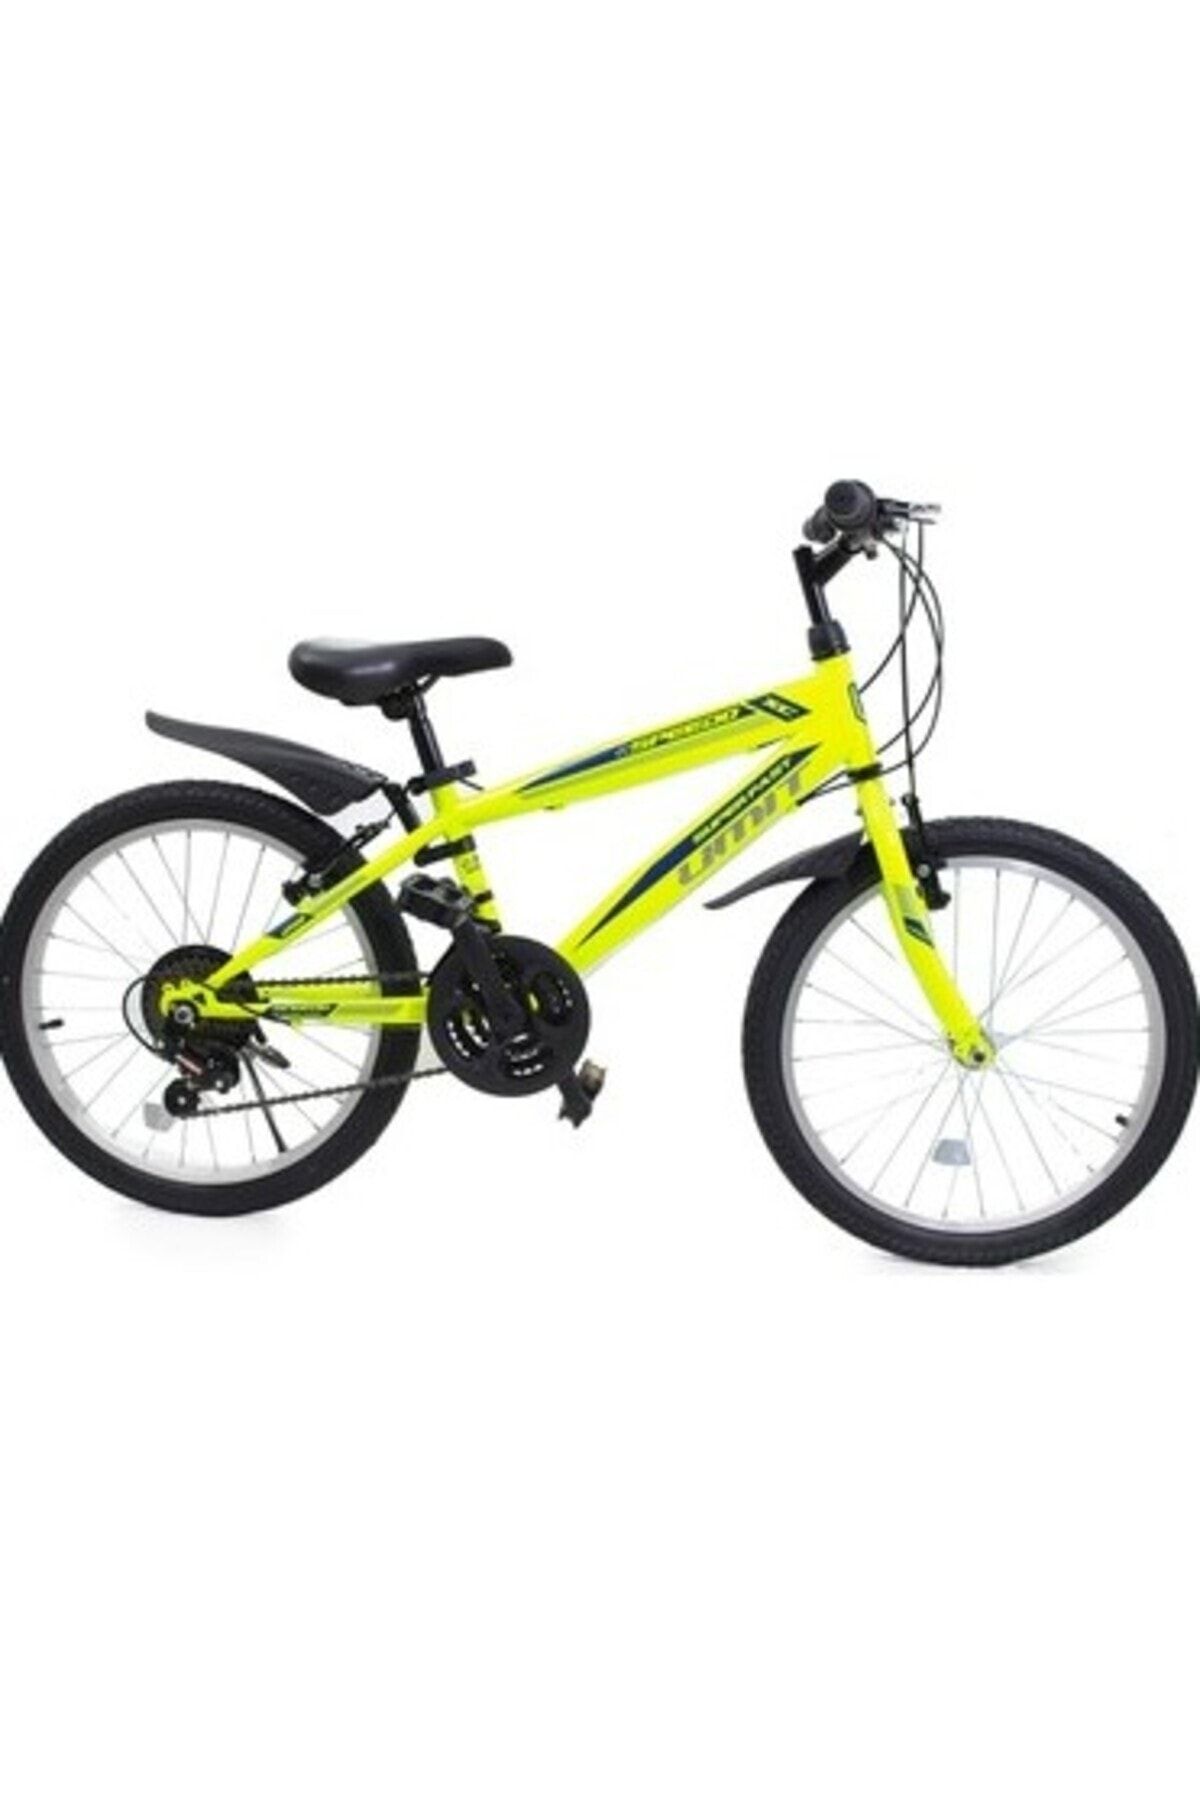 Ümit Bisiklet 32067 Speedo M-MTB-V-18 SRN 20 Jant 18 Vites Çocuk Bisikleti